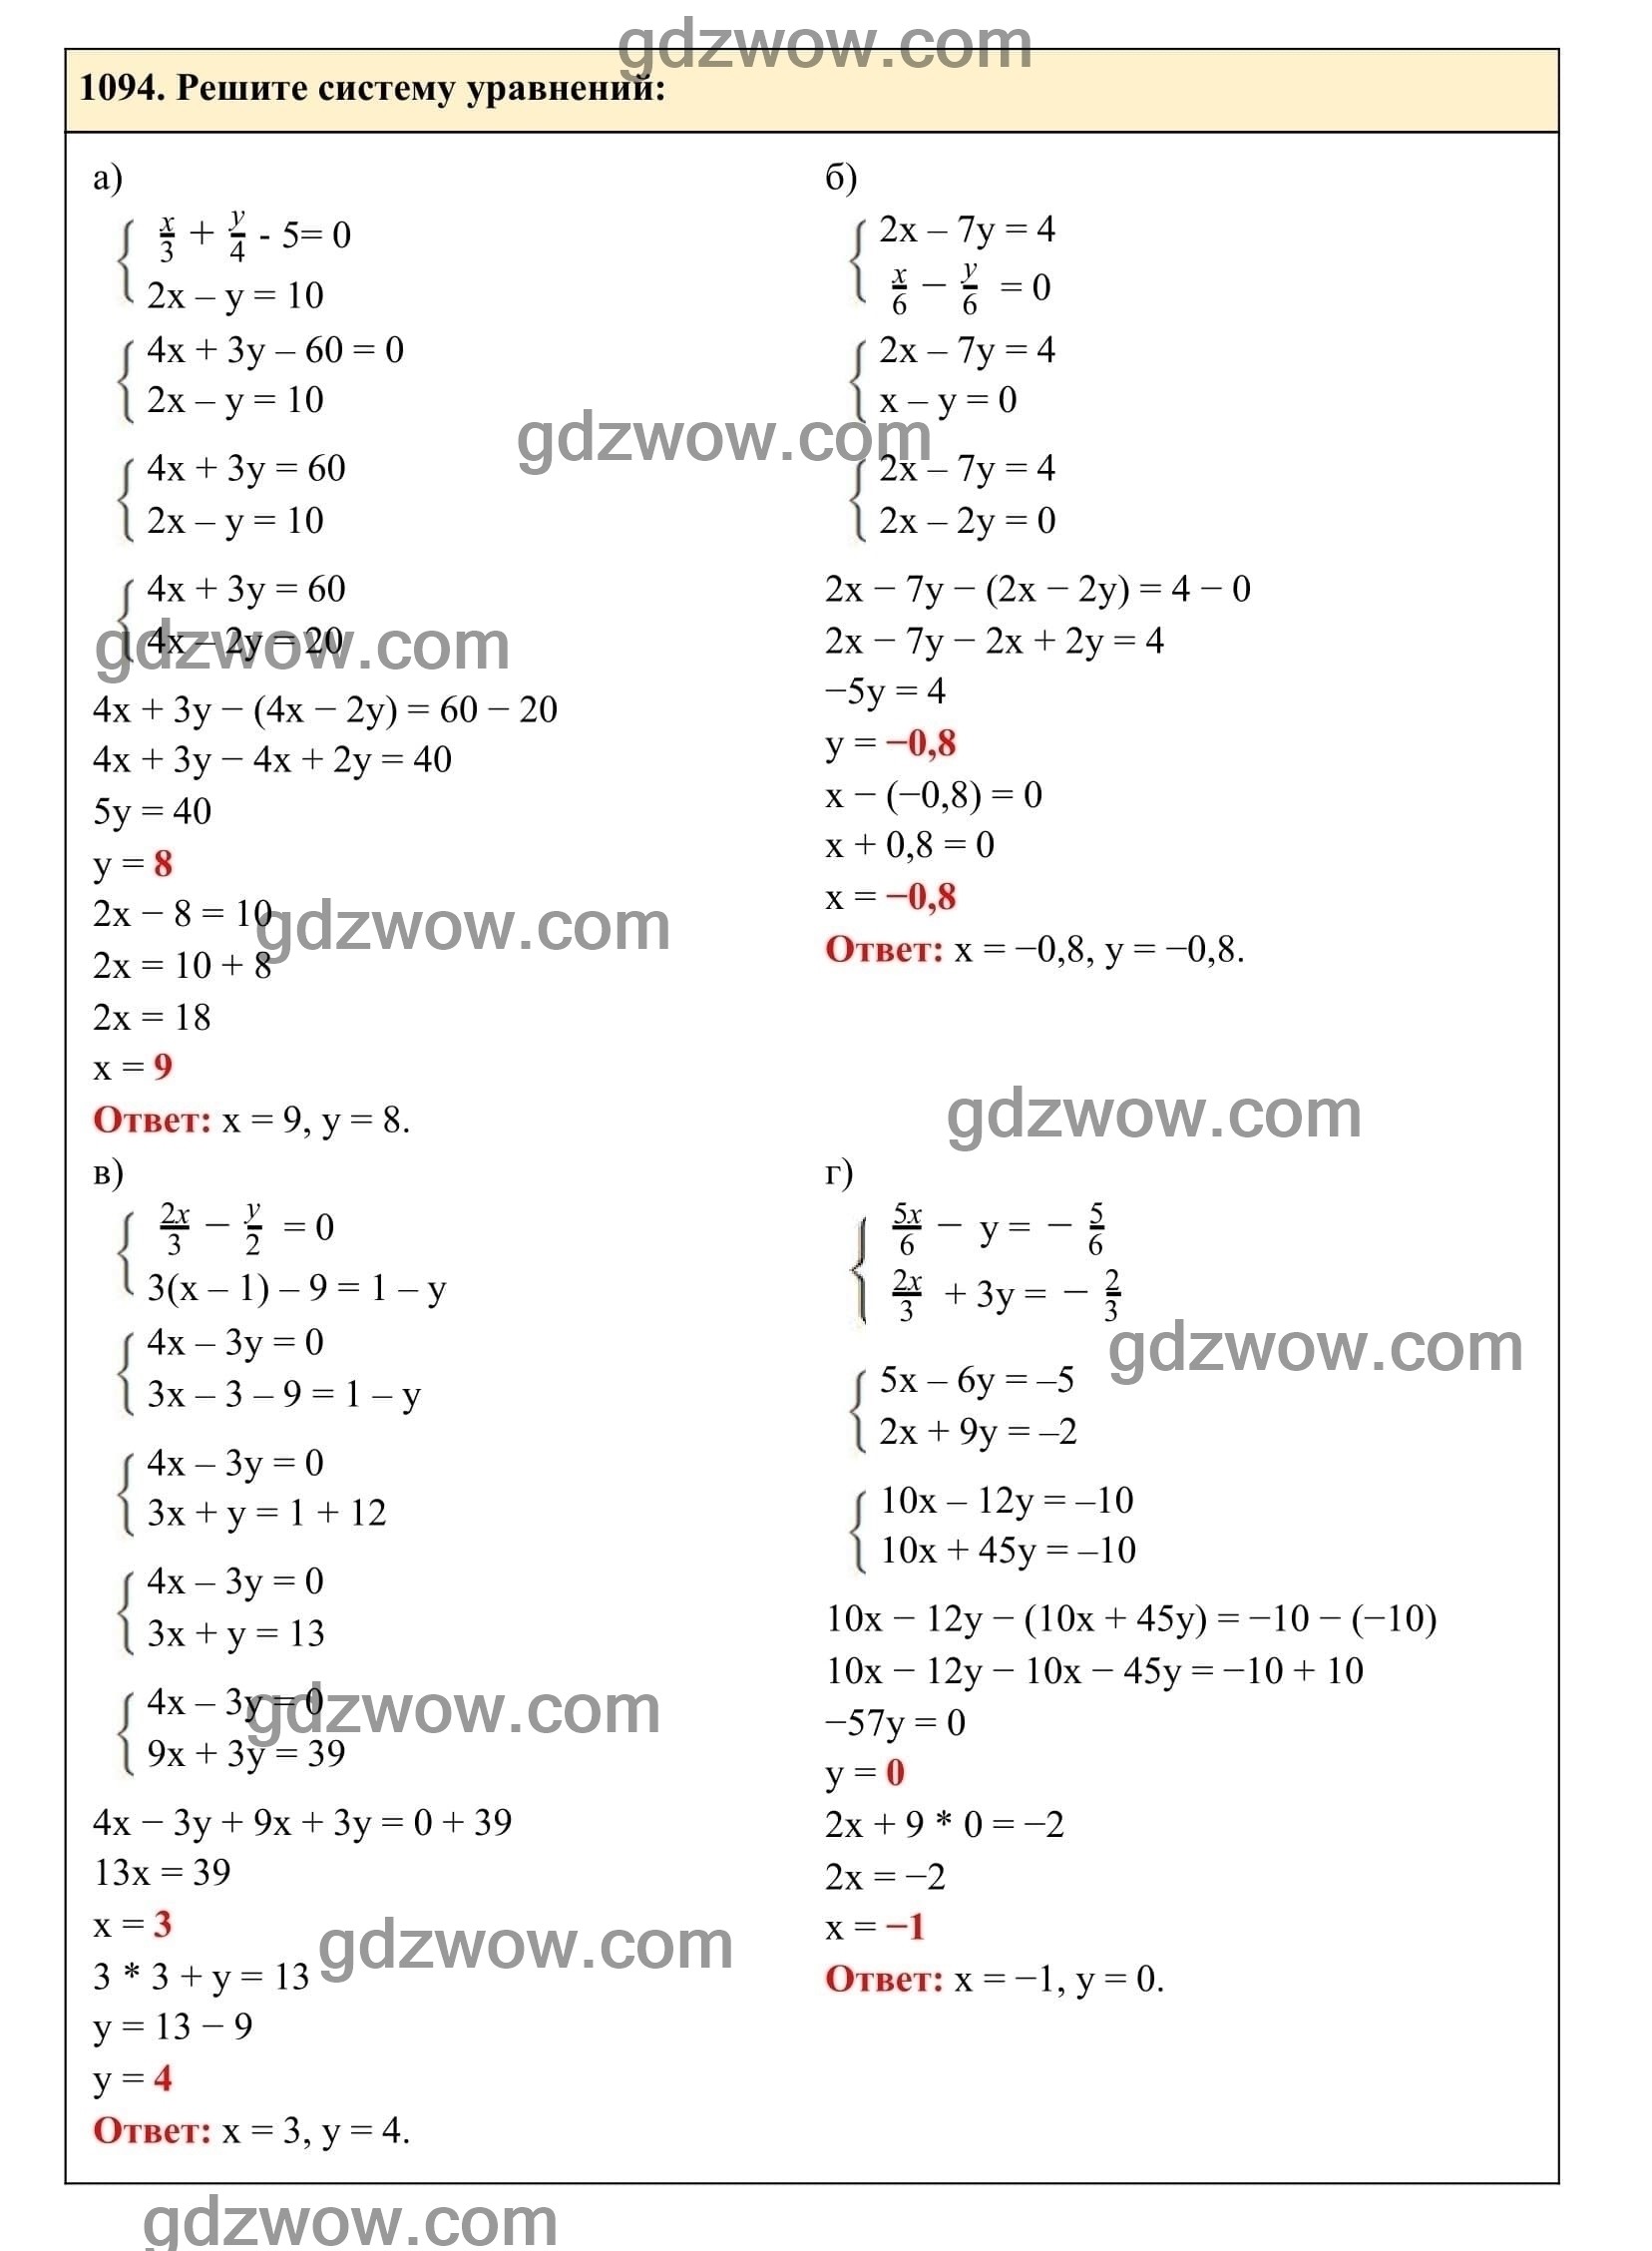 Упражнение 1094 - ГДЗ по Алгебре 7 класс Учебник Макарычев (решебник) - GDZwow